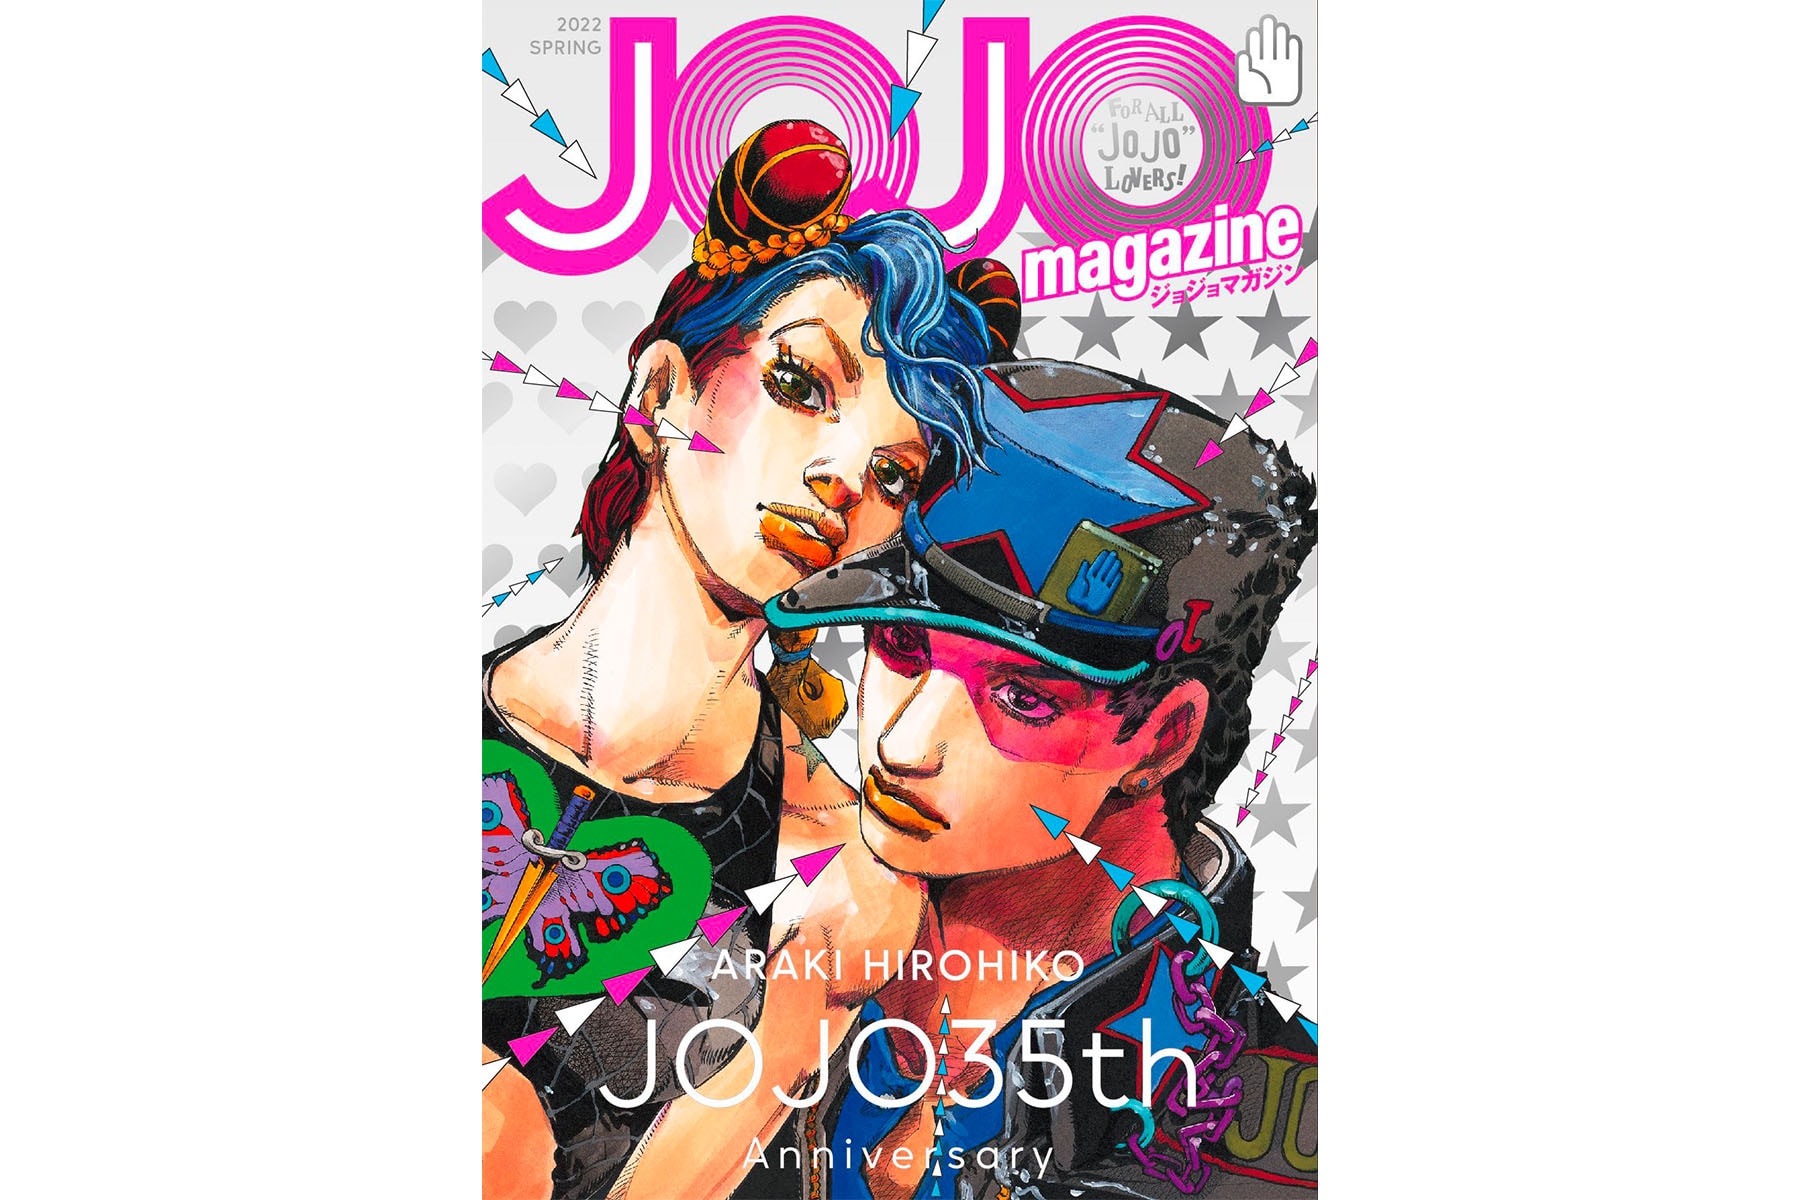 《JoJo 的奇妙冒險》為 35 週年紀念即將推出《JOJO magazine》